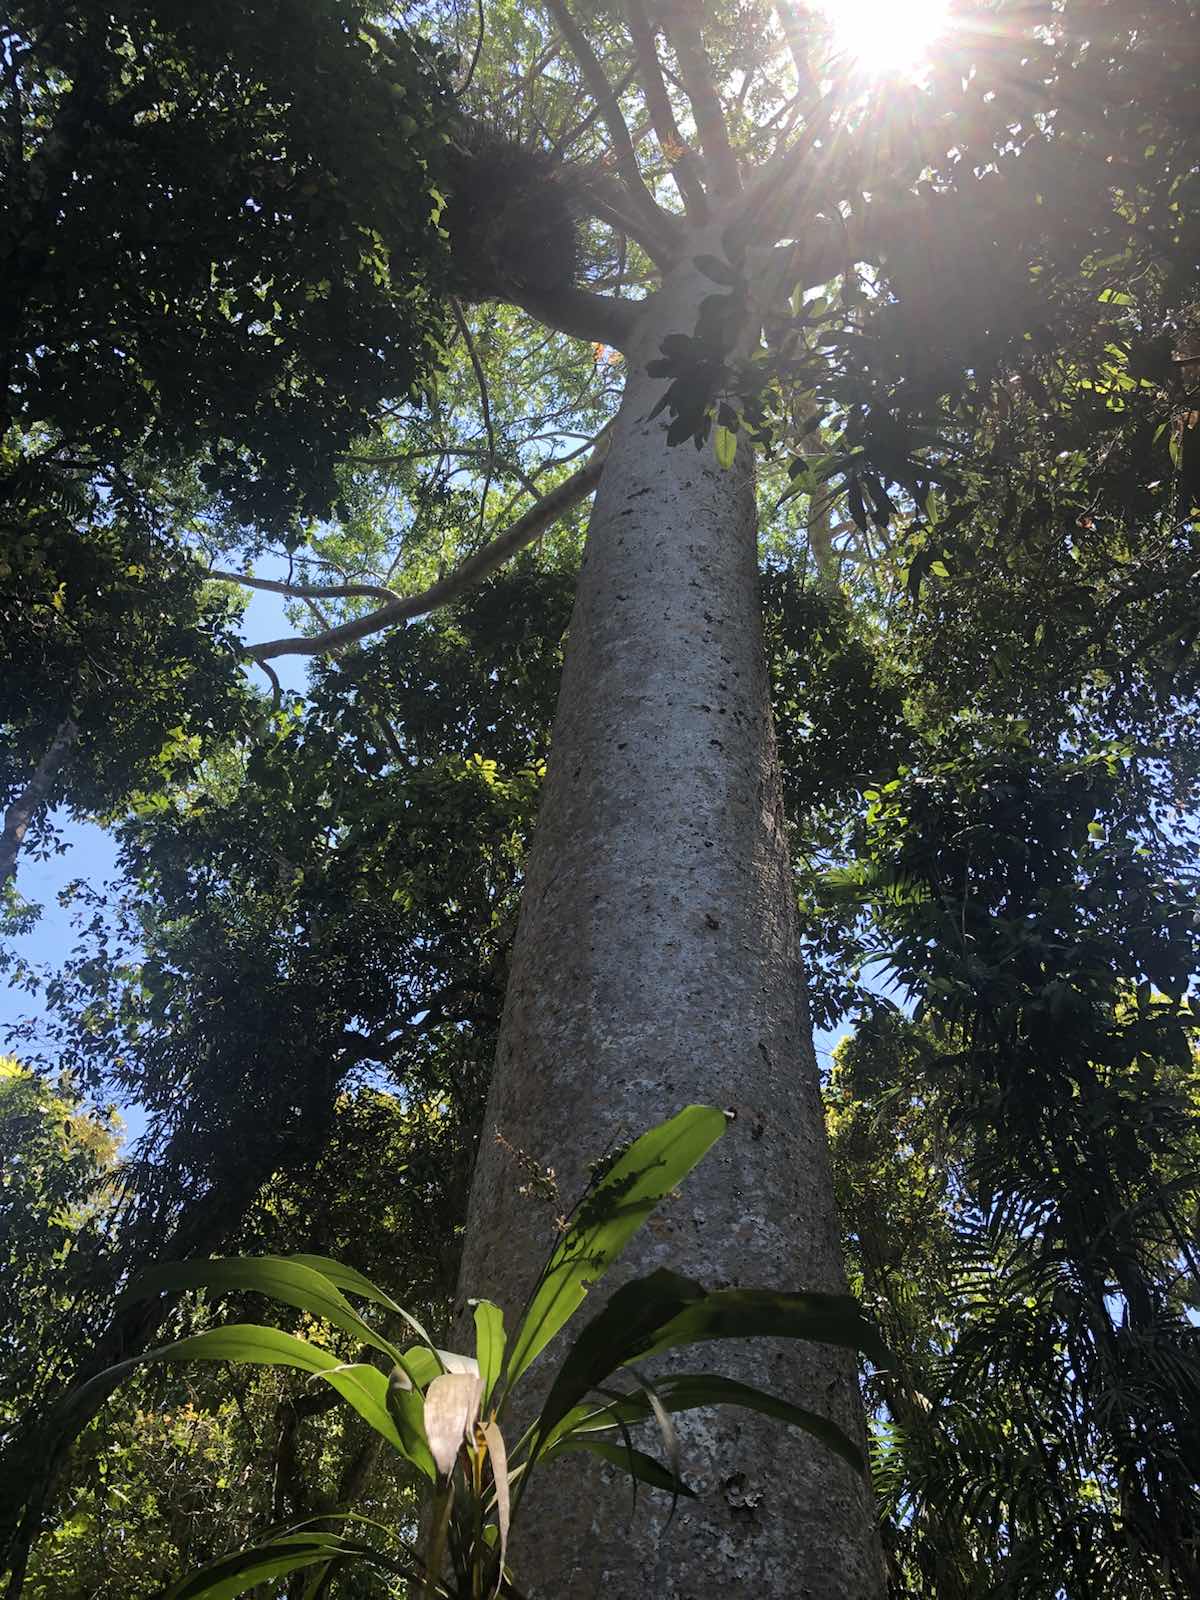 库兰达热带雨林之行是我们选择的第一站，之所以把这当成第一站是因为我们经